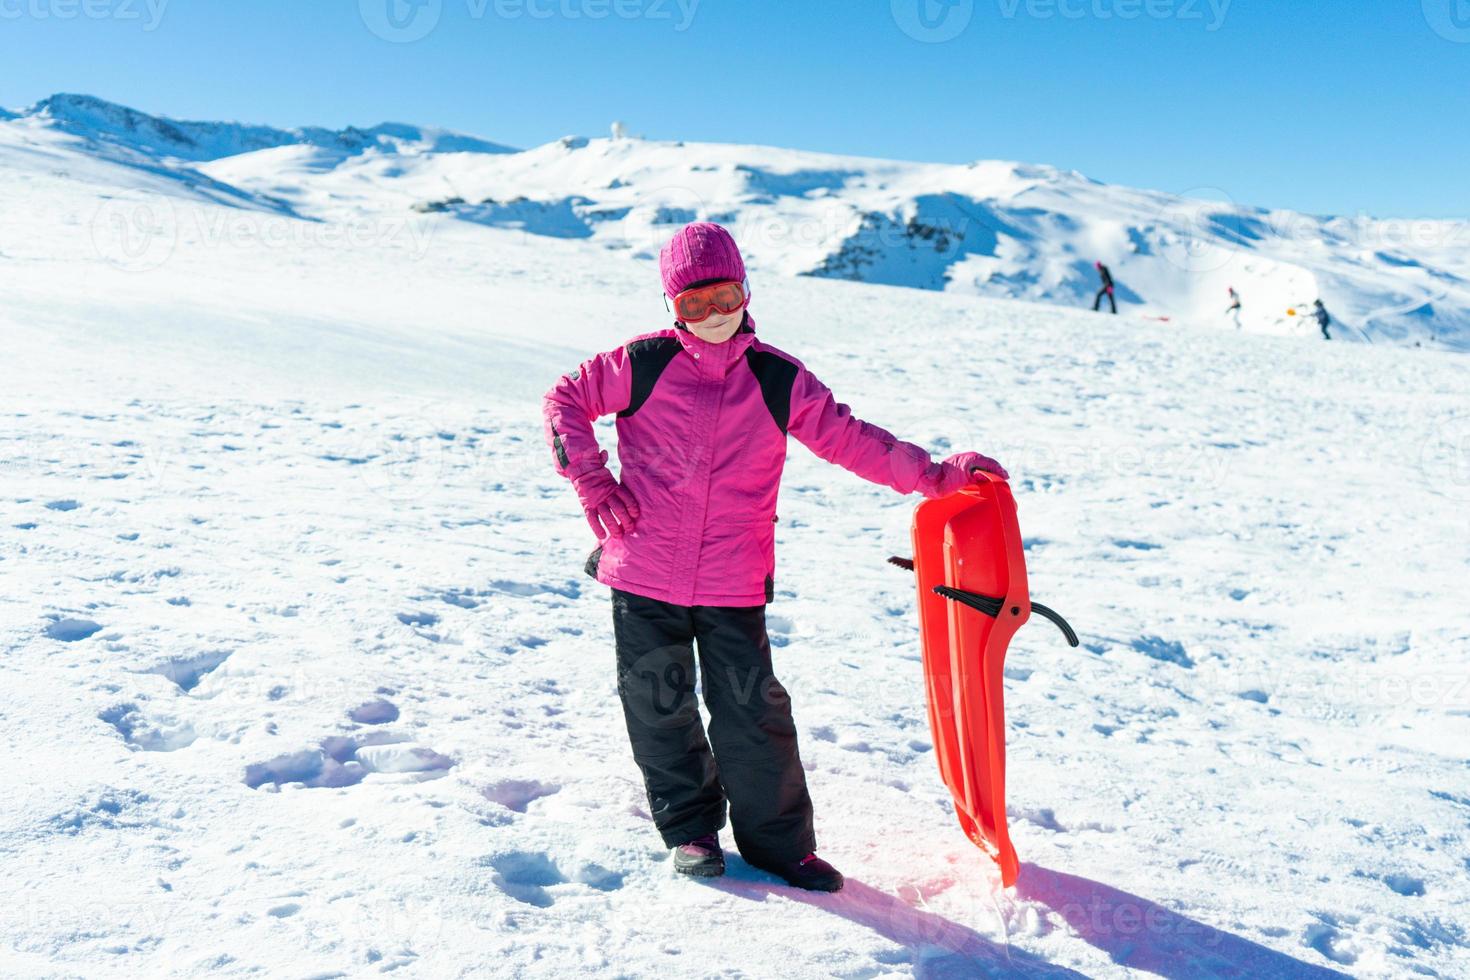 niña en trineo en la estación de esquí de sierra nevada. foto